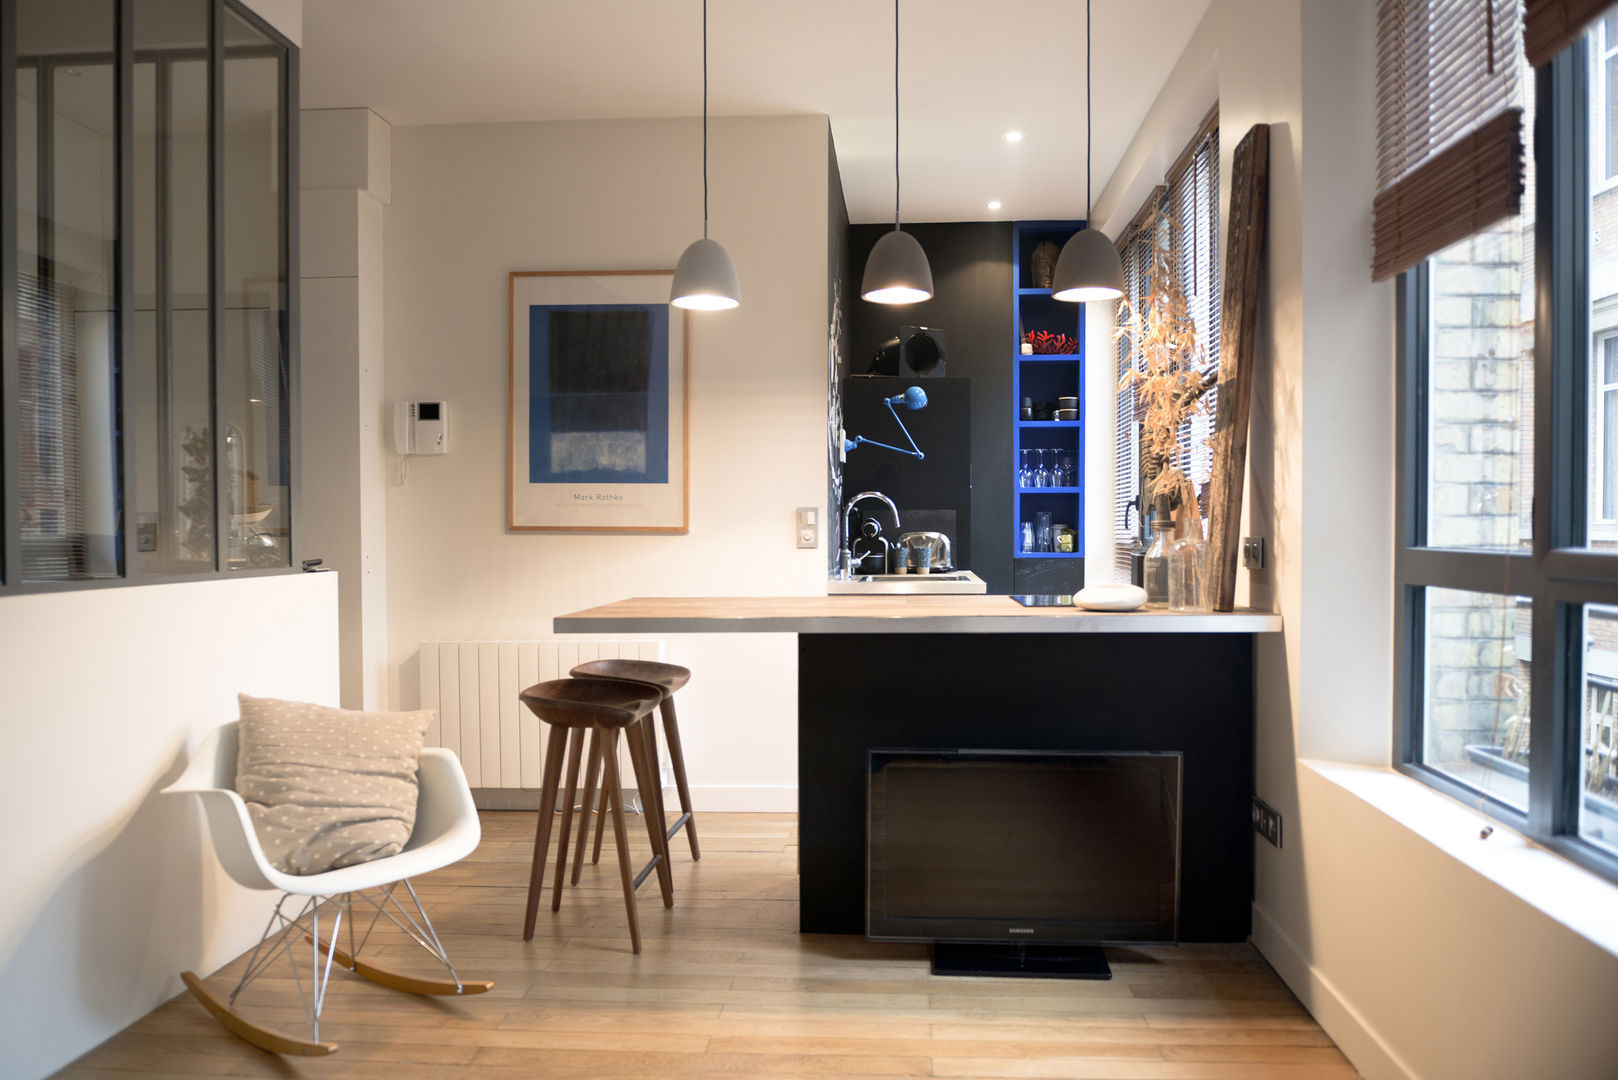 Rénovation Compléte d'un Ancien Bureau en Appartement, Atelier Grey Atelier Grey Cocinas de estilo moderno